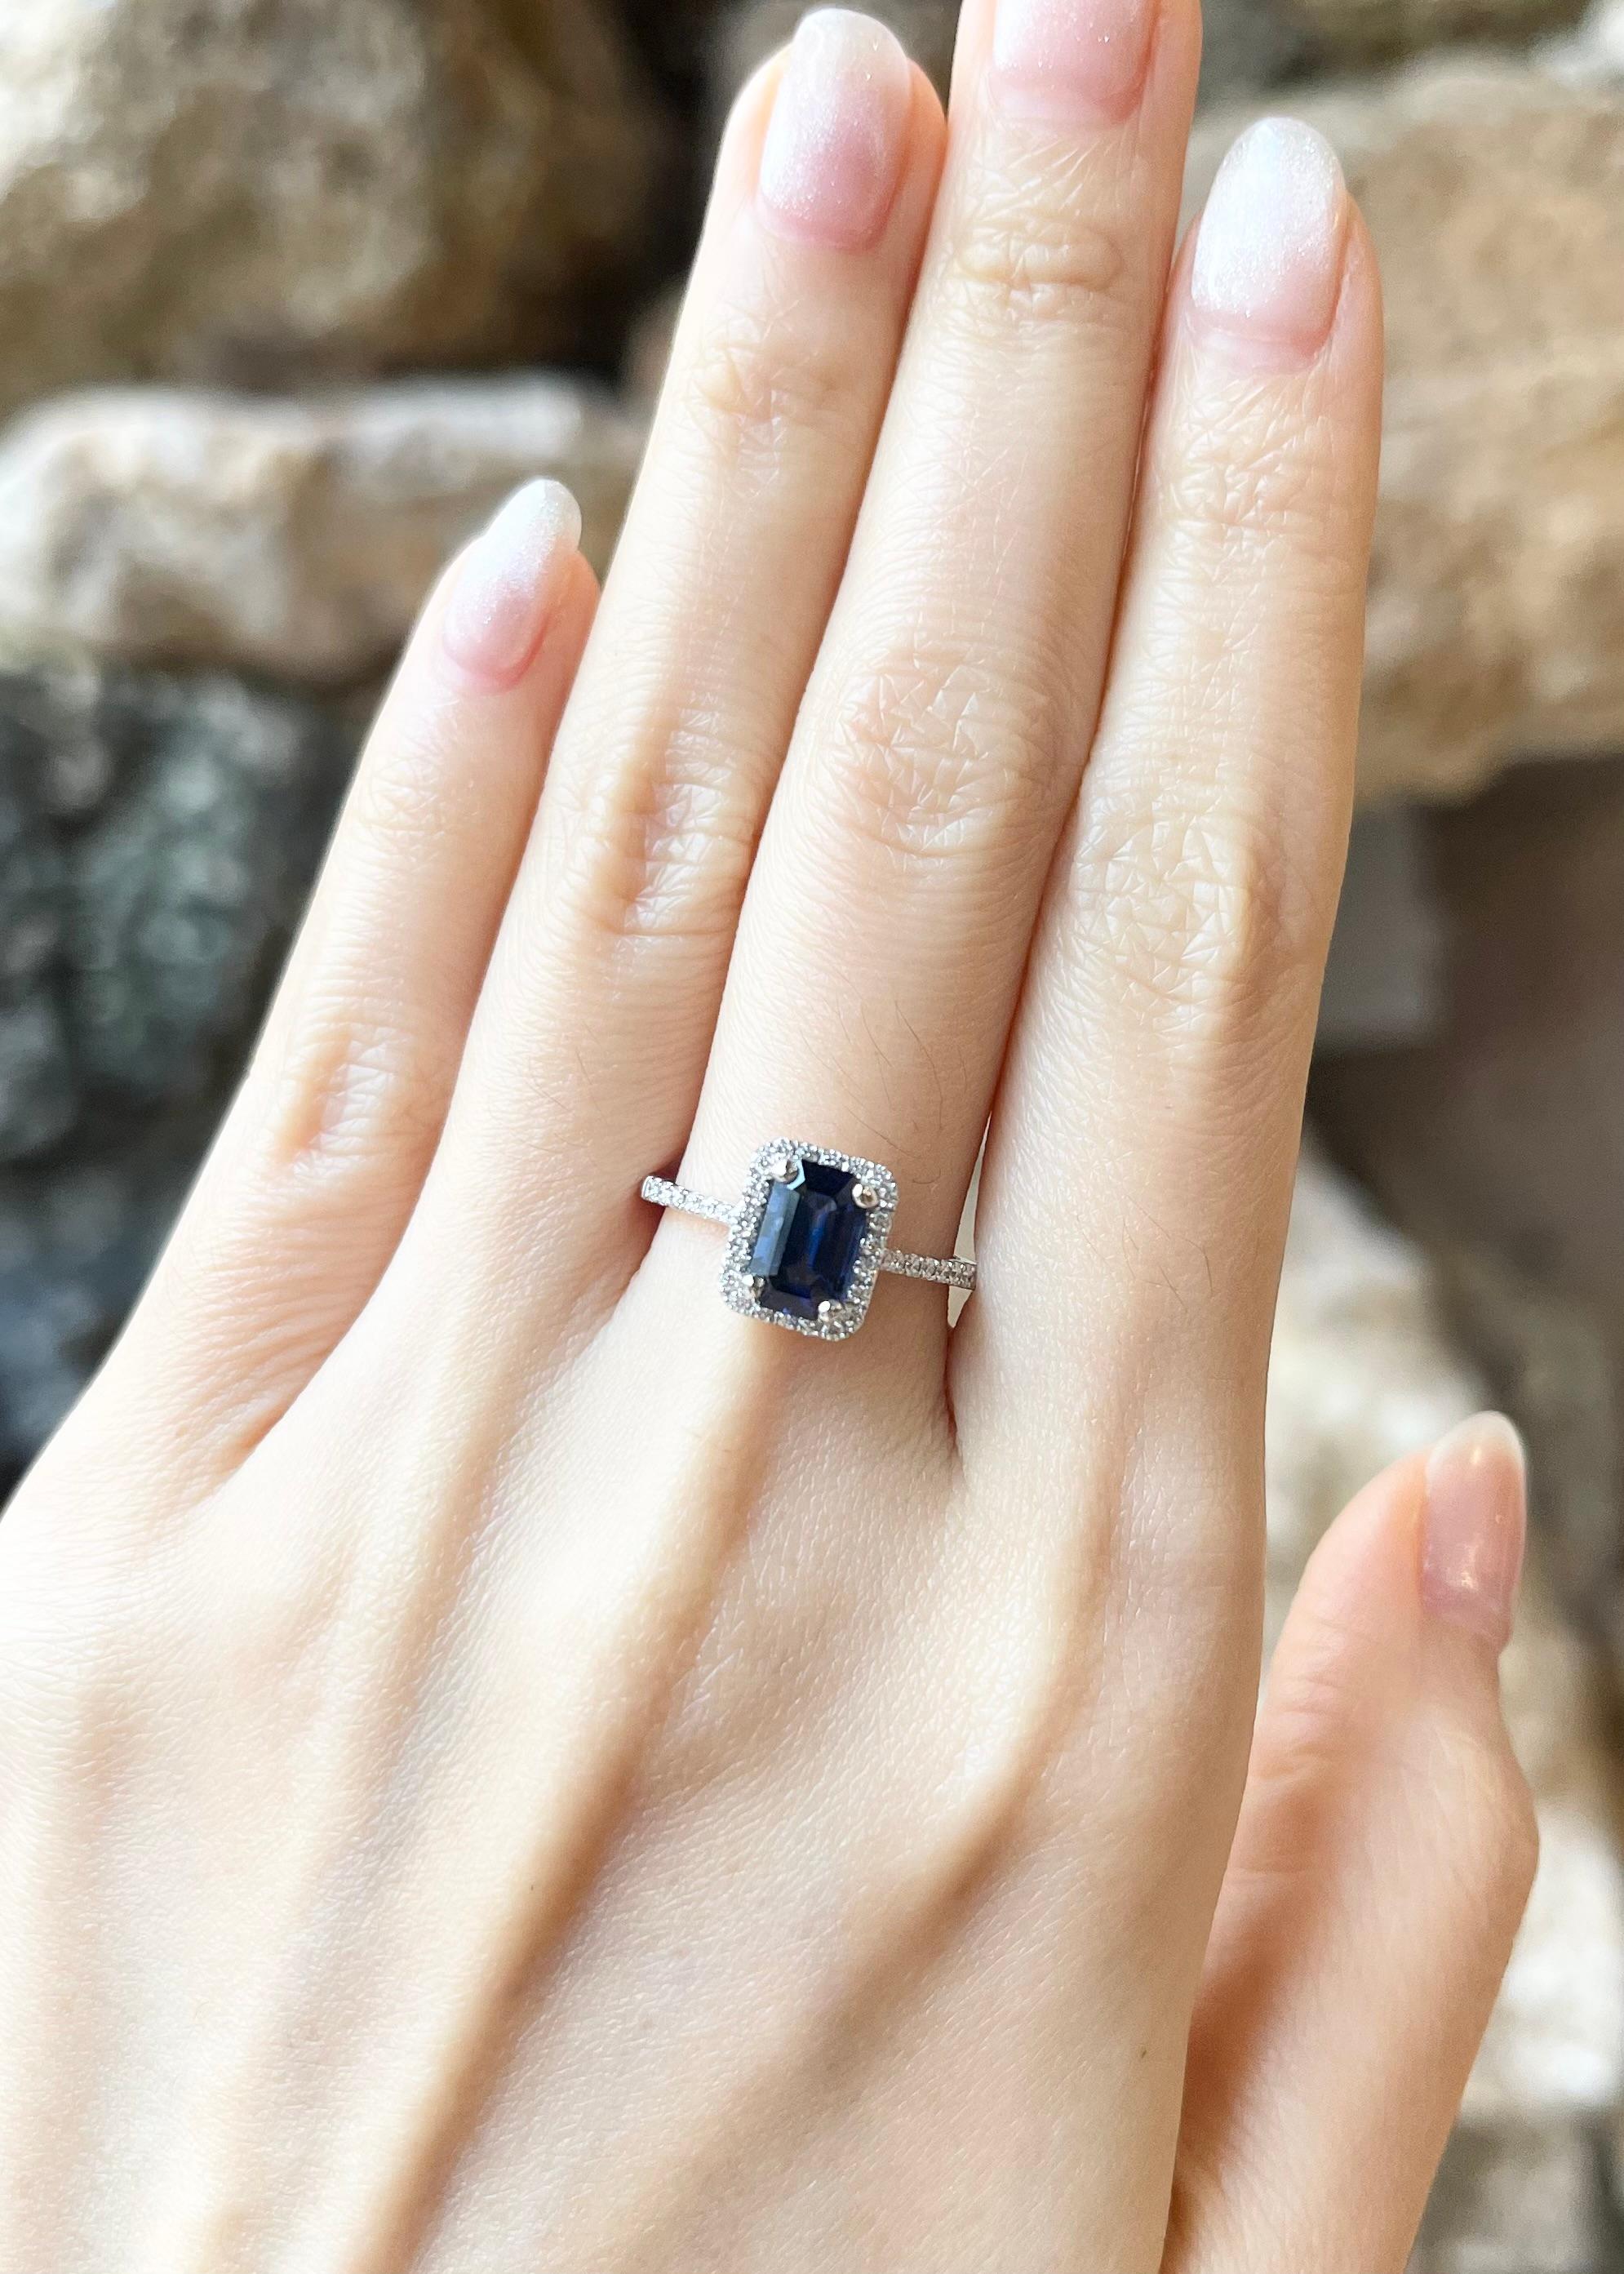 Saphir bleu 1,49 carats et diamant 0,21 carat bague en or blanc 18 carats

Largeur :  0.7 cm 
Longueur : 1.0 cm
Taille de l'anneau : 54
Poids total : 3,37 grammes

